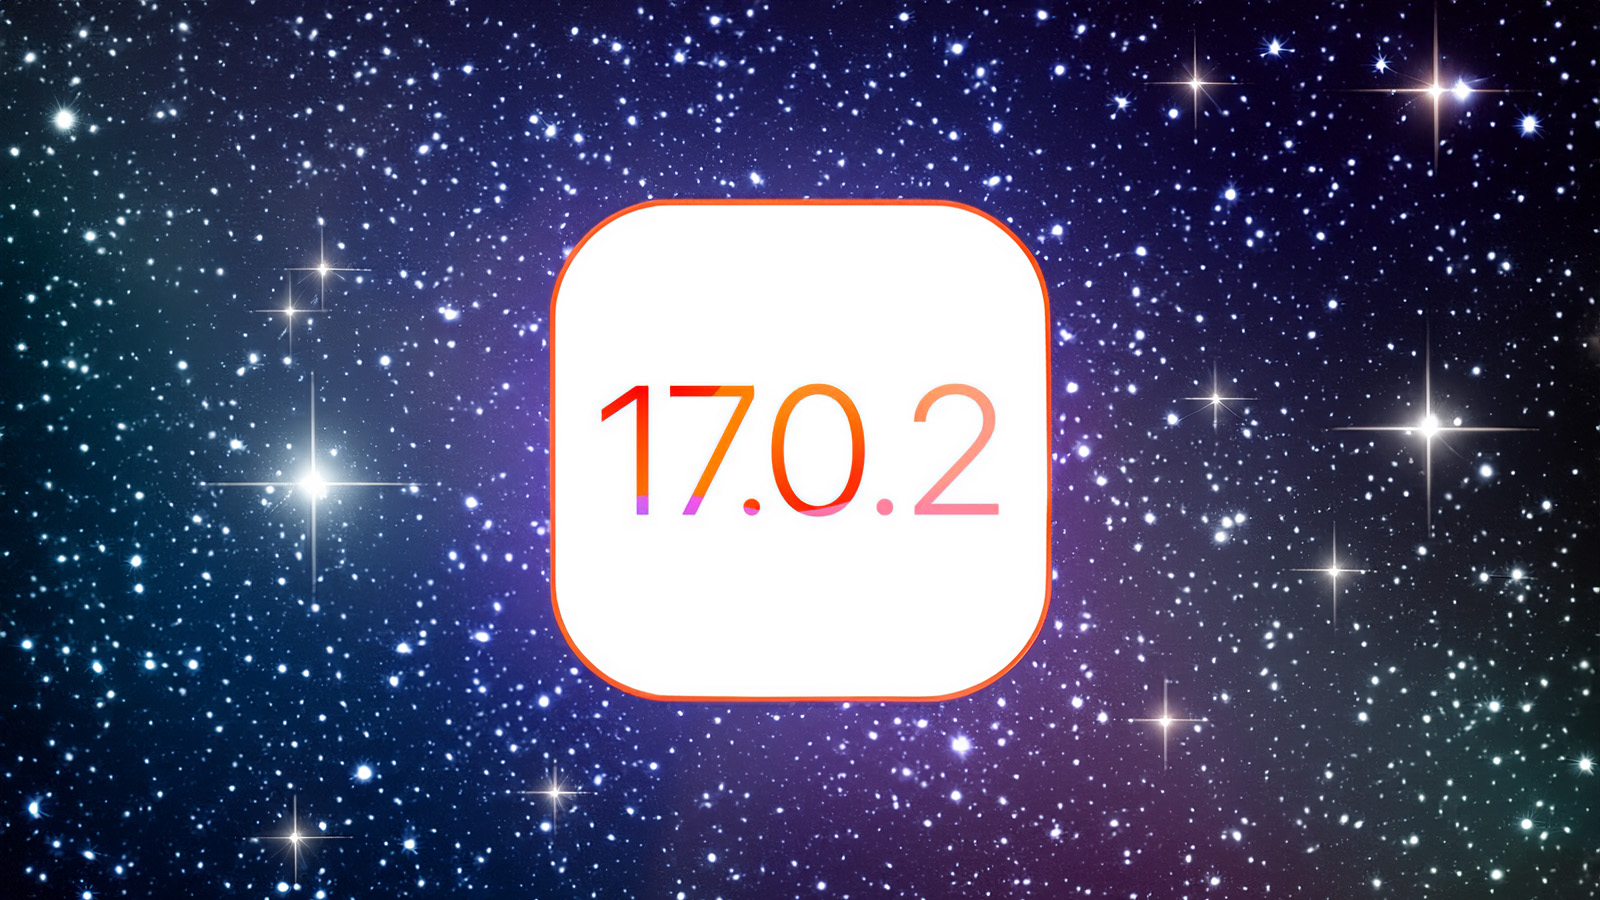 Da iPhoneIslam.com, sfondo stellato con testo 17 7 2 con Apple e iOS.